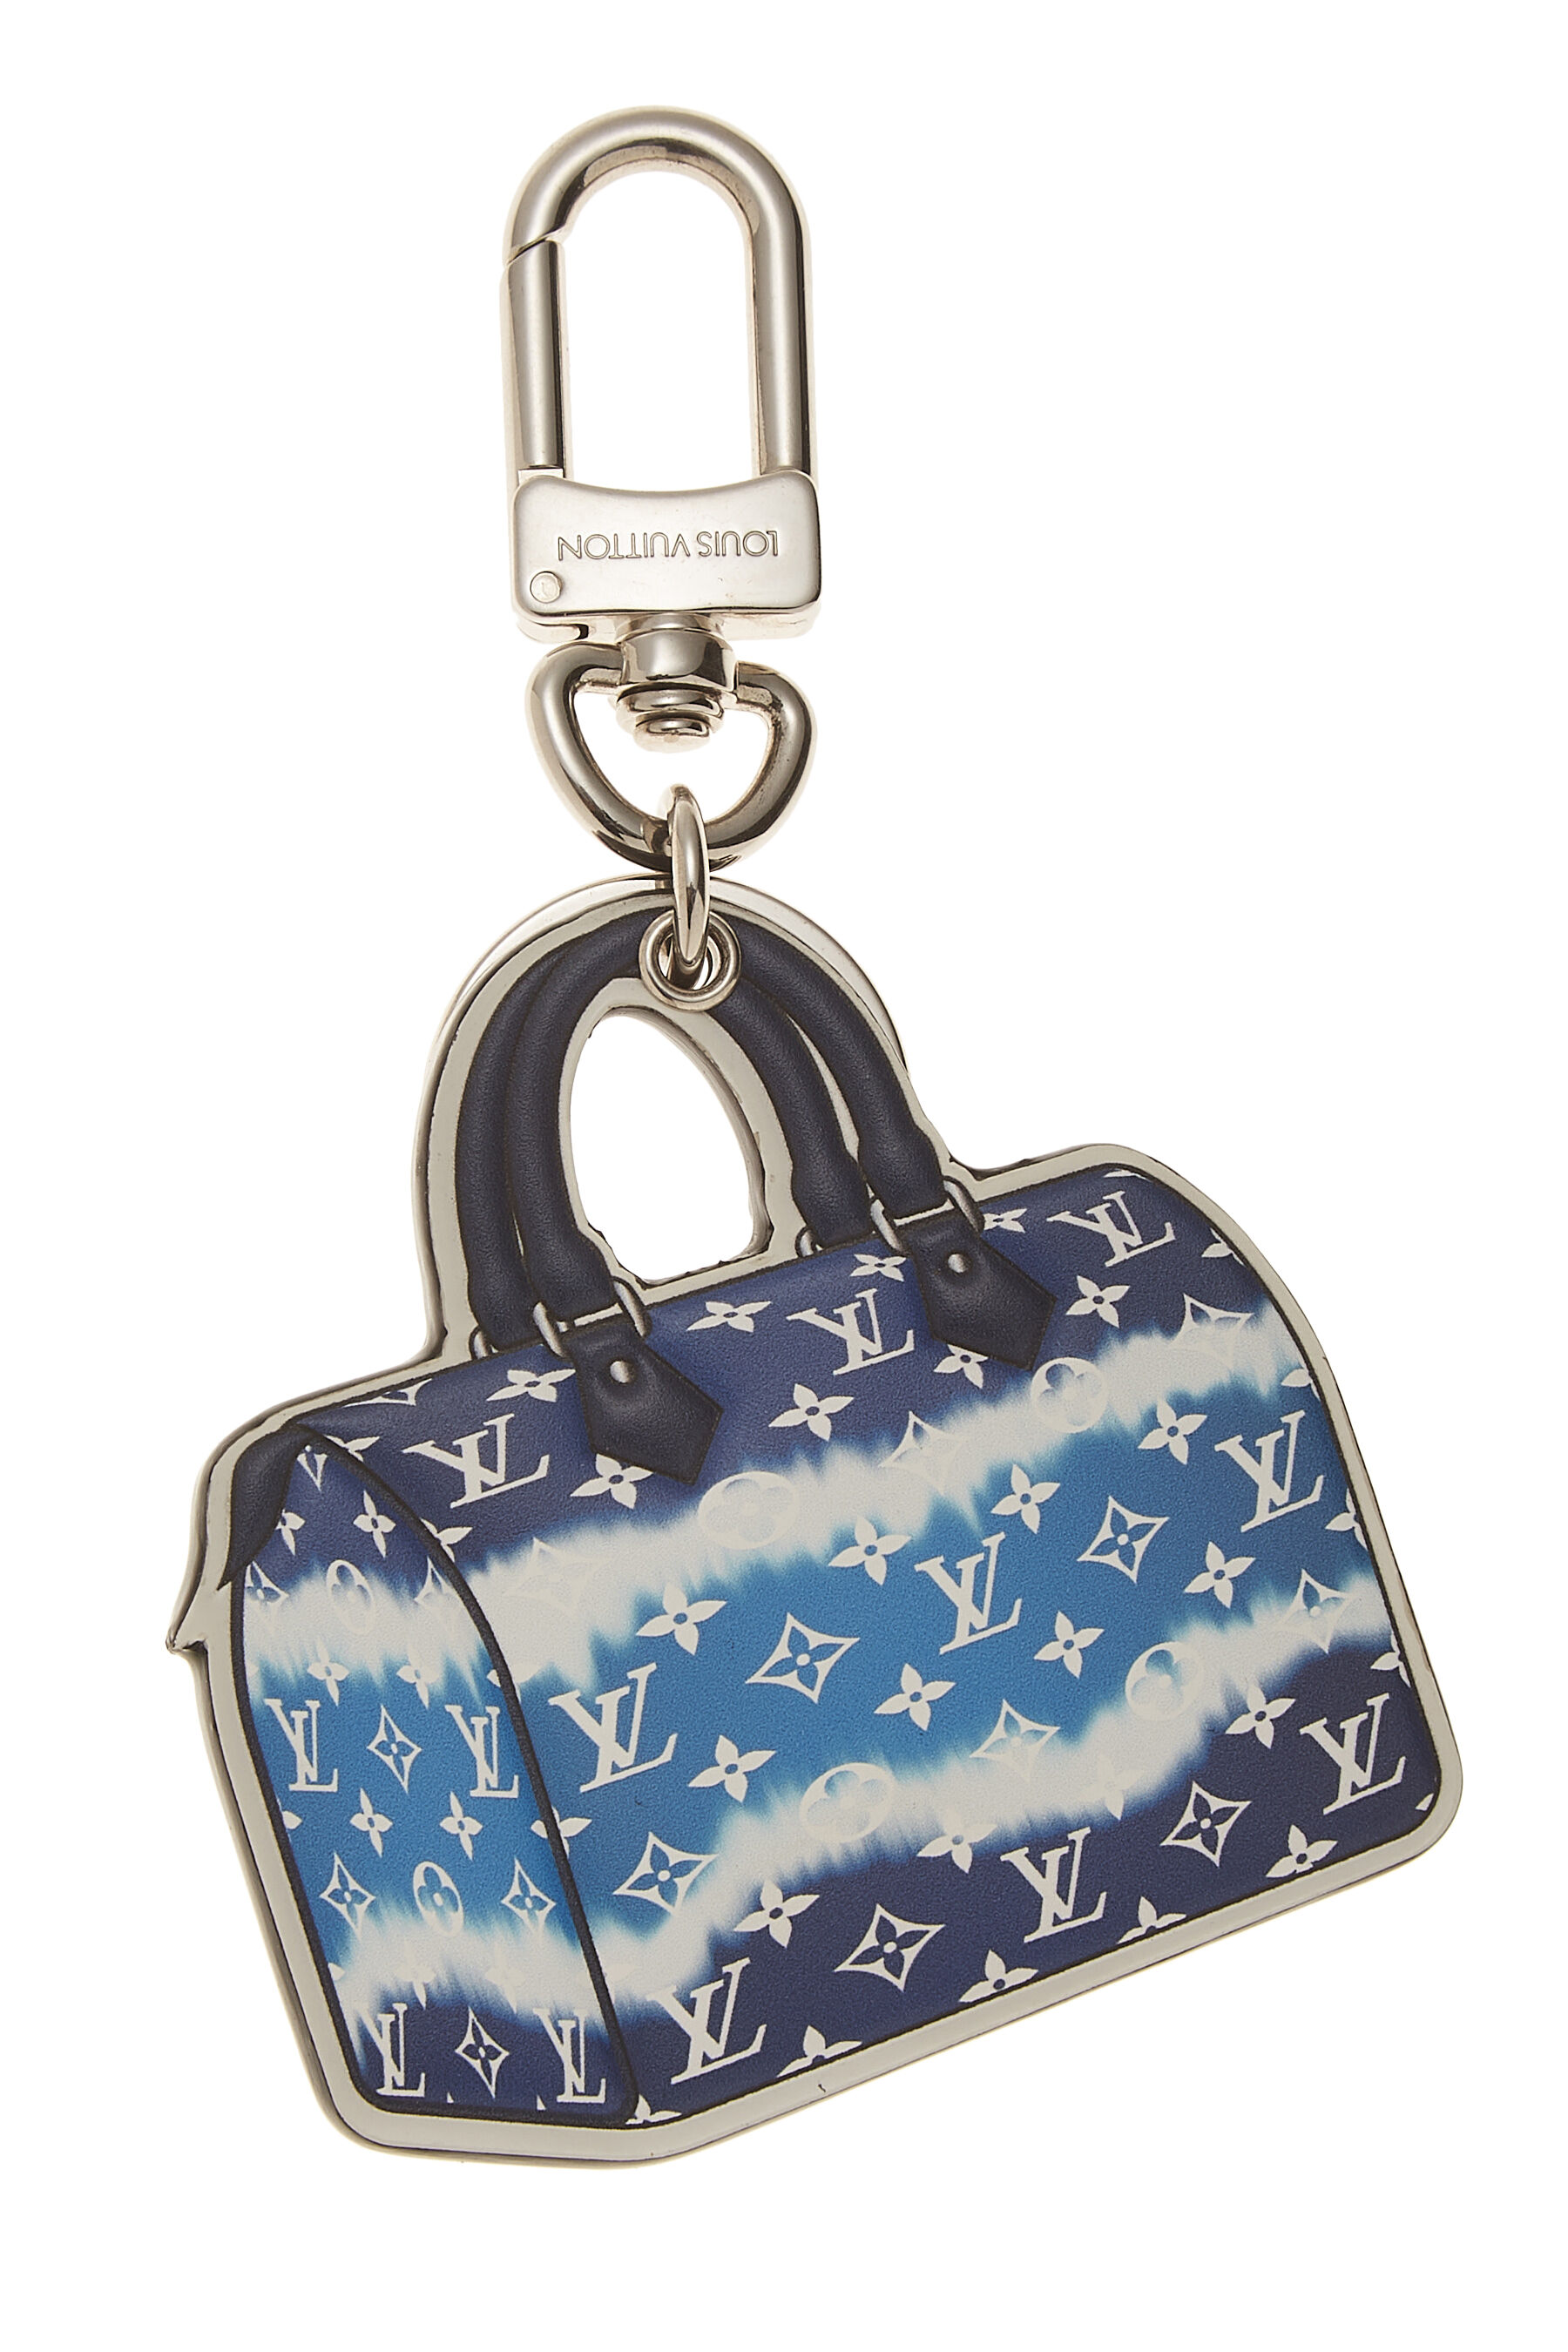 Louis Vuitton Silver & White Fleur D'Epi Bag Charm & Key Holder